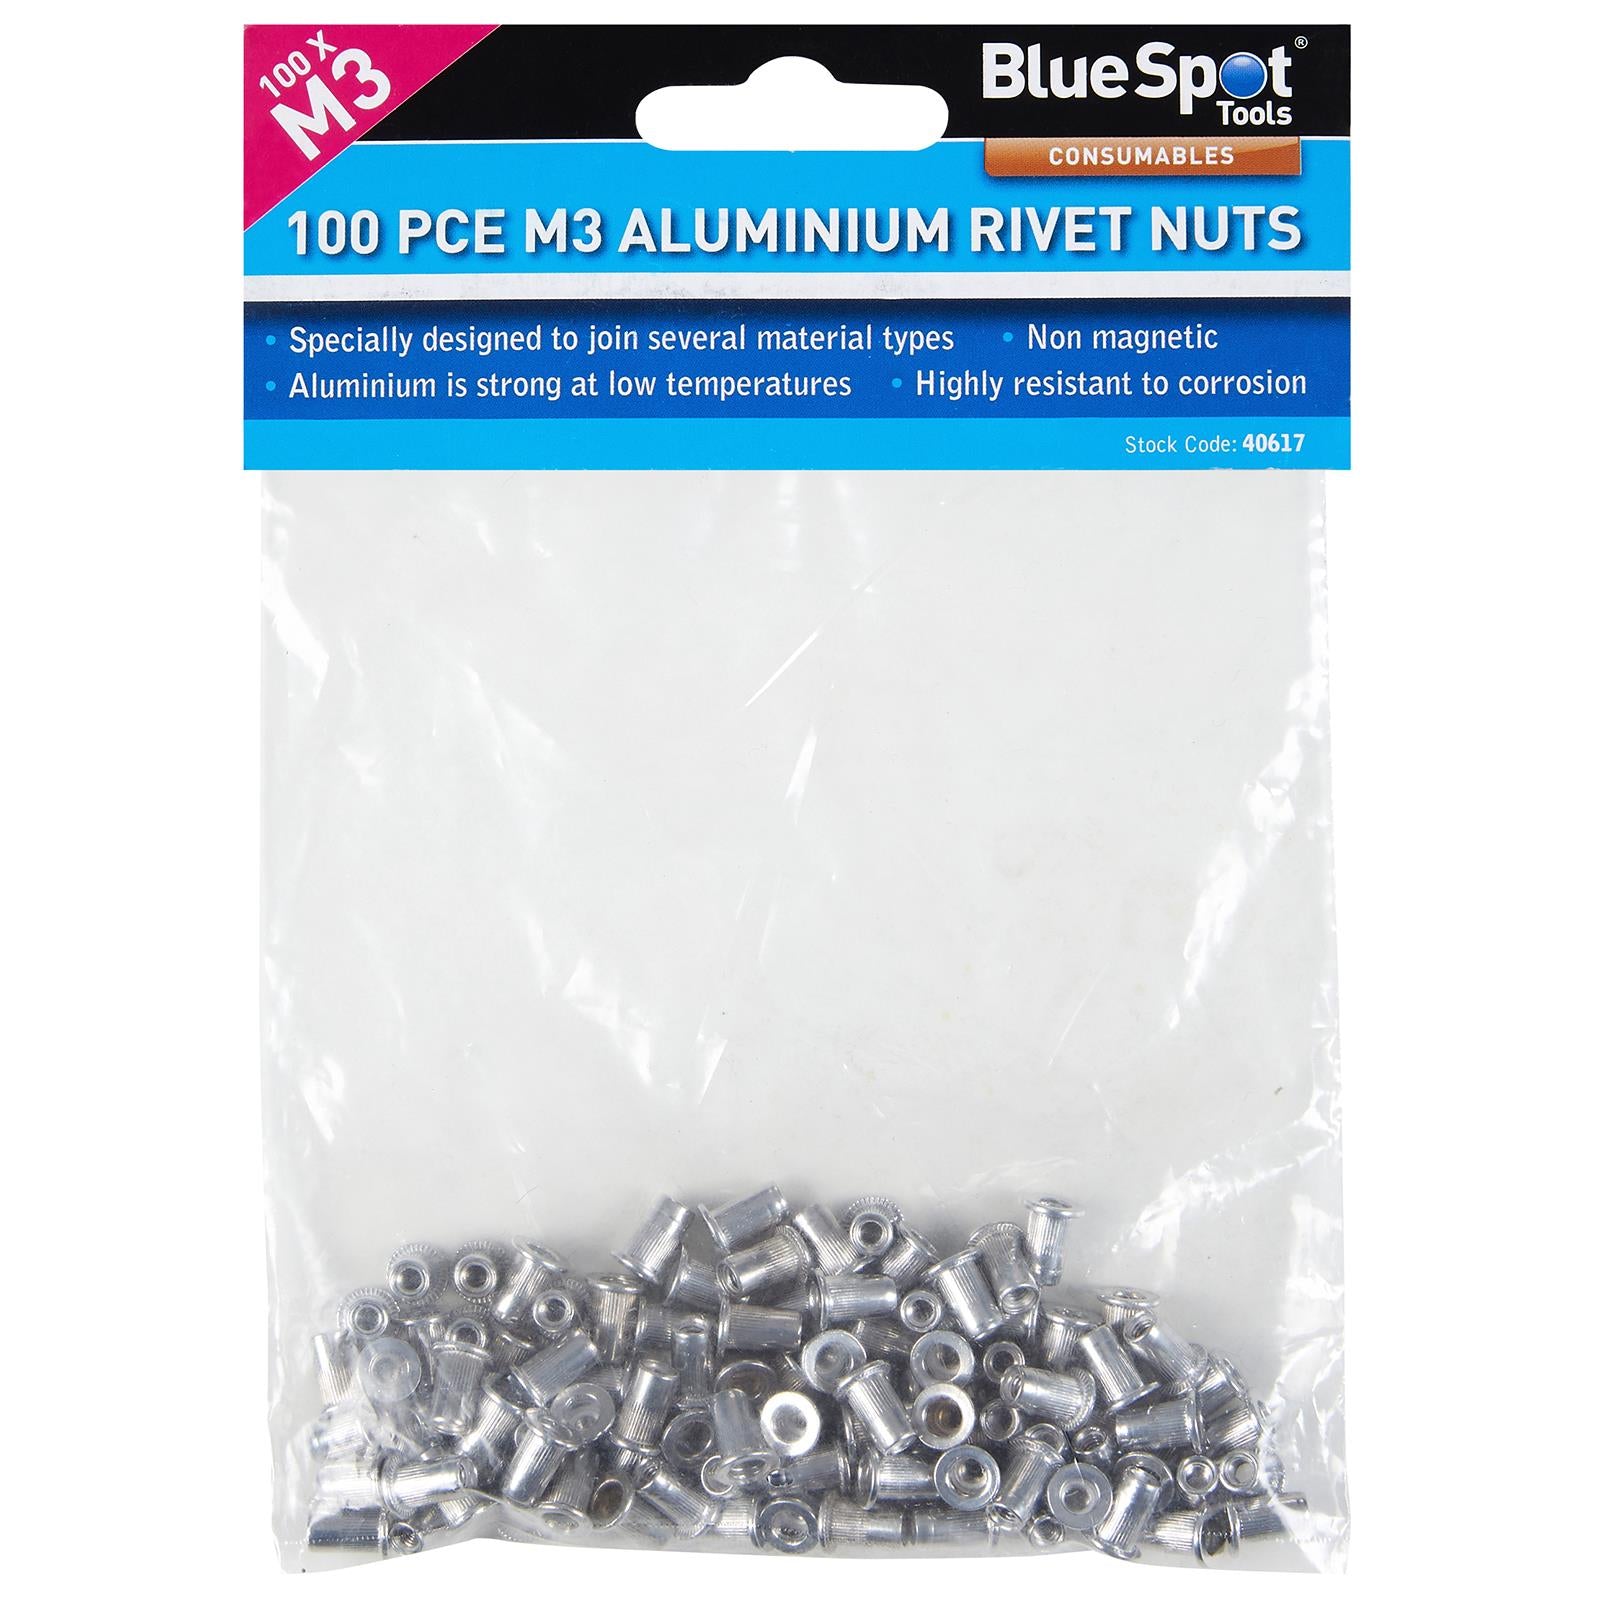 BlueSpot Aluminium Rivet Nuts M3 100 Piece Rivnuts